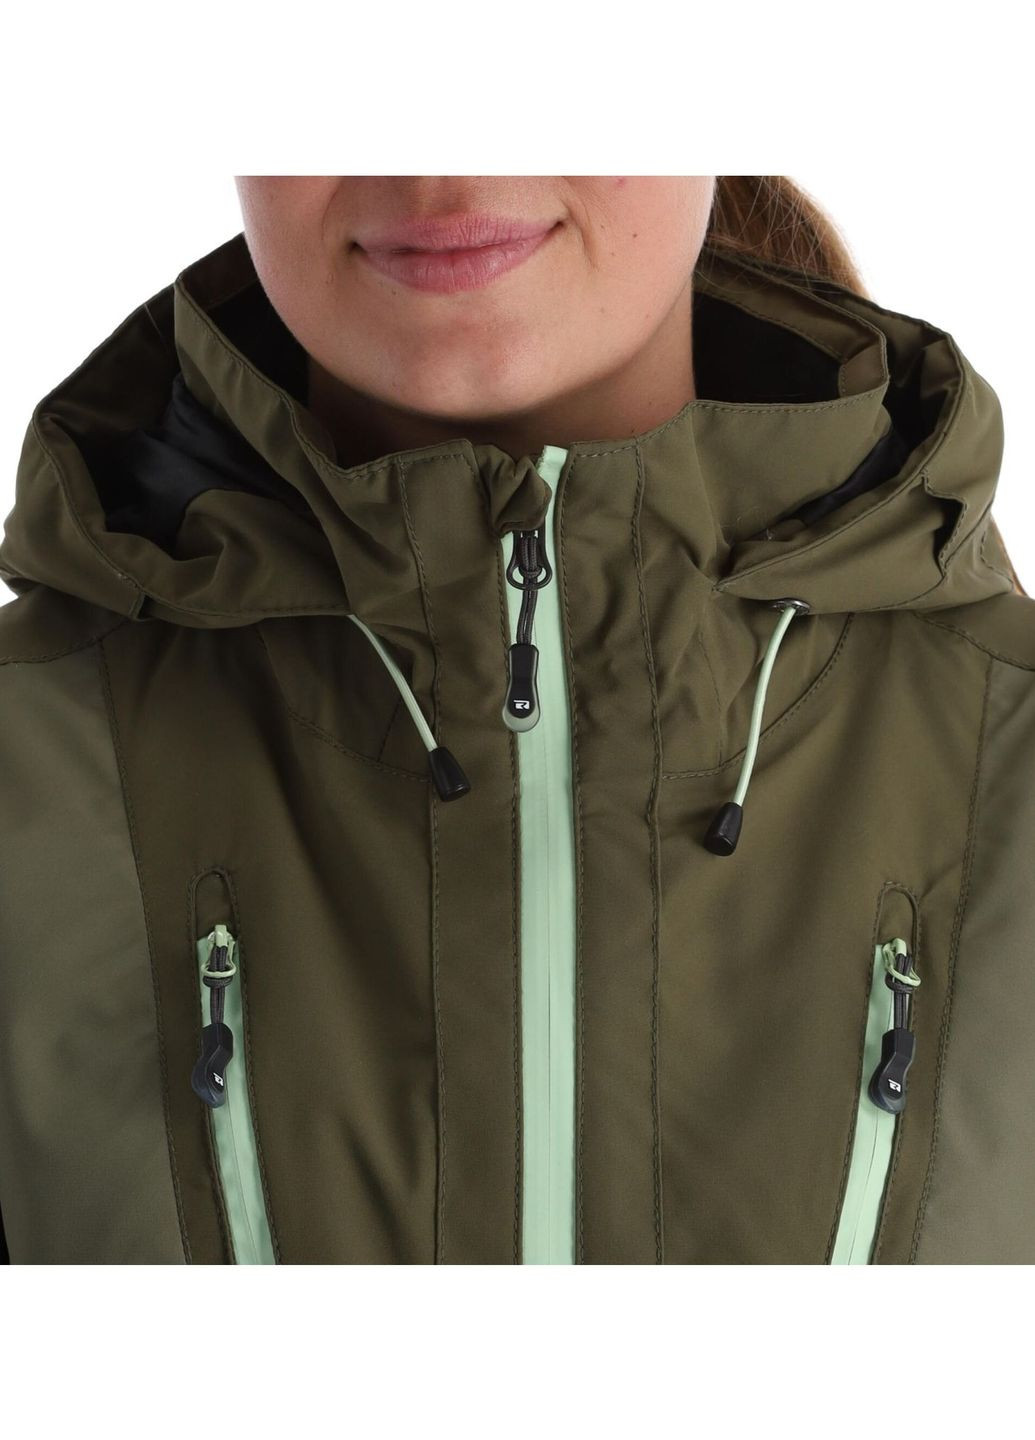 Зимняя лыжная куртка Rehall evy-r dusty olive (268743262)